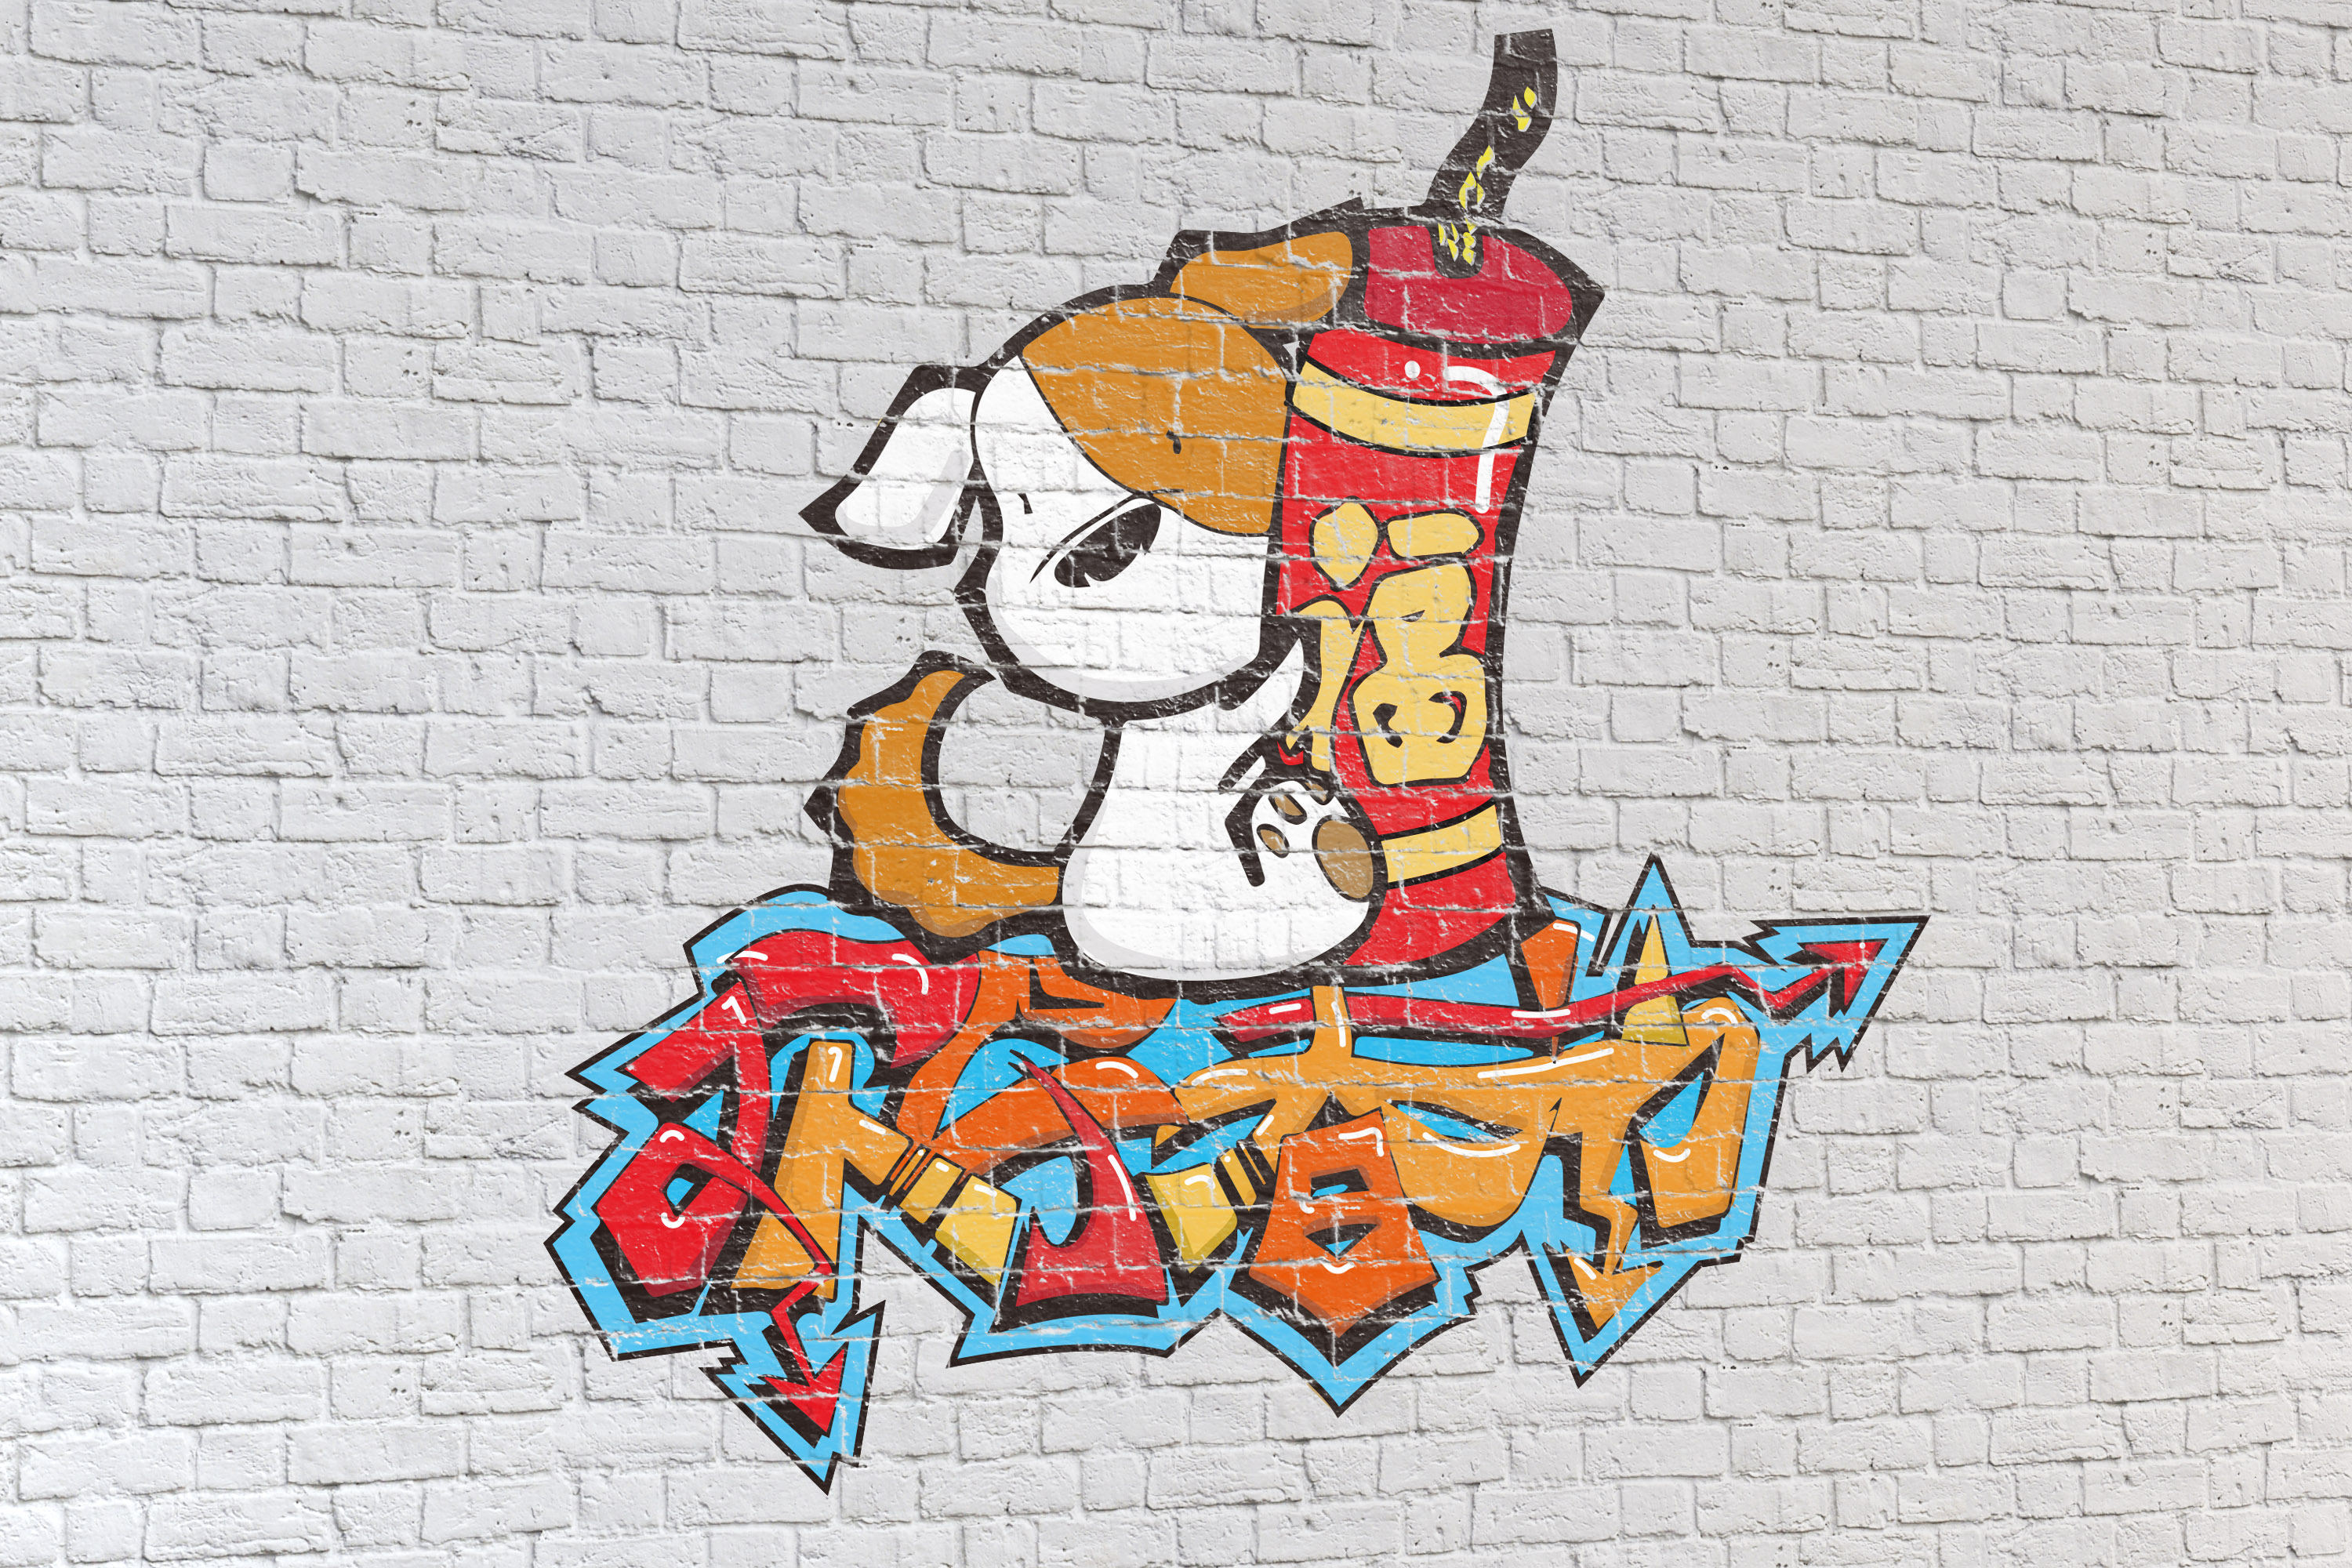 作为中国本土的犬种之一,我们结合了现代的墙绘艺术和中国传统元素